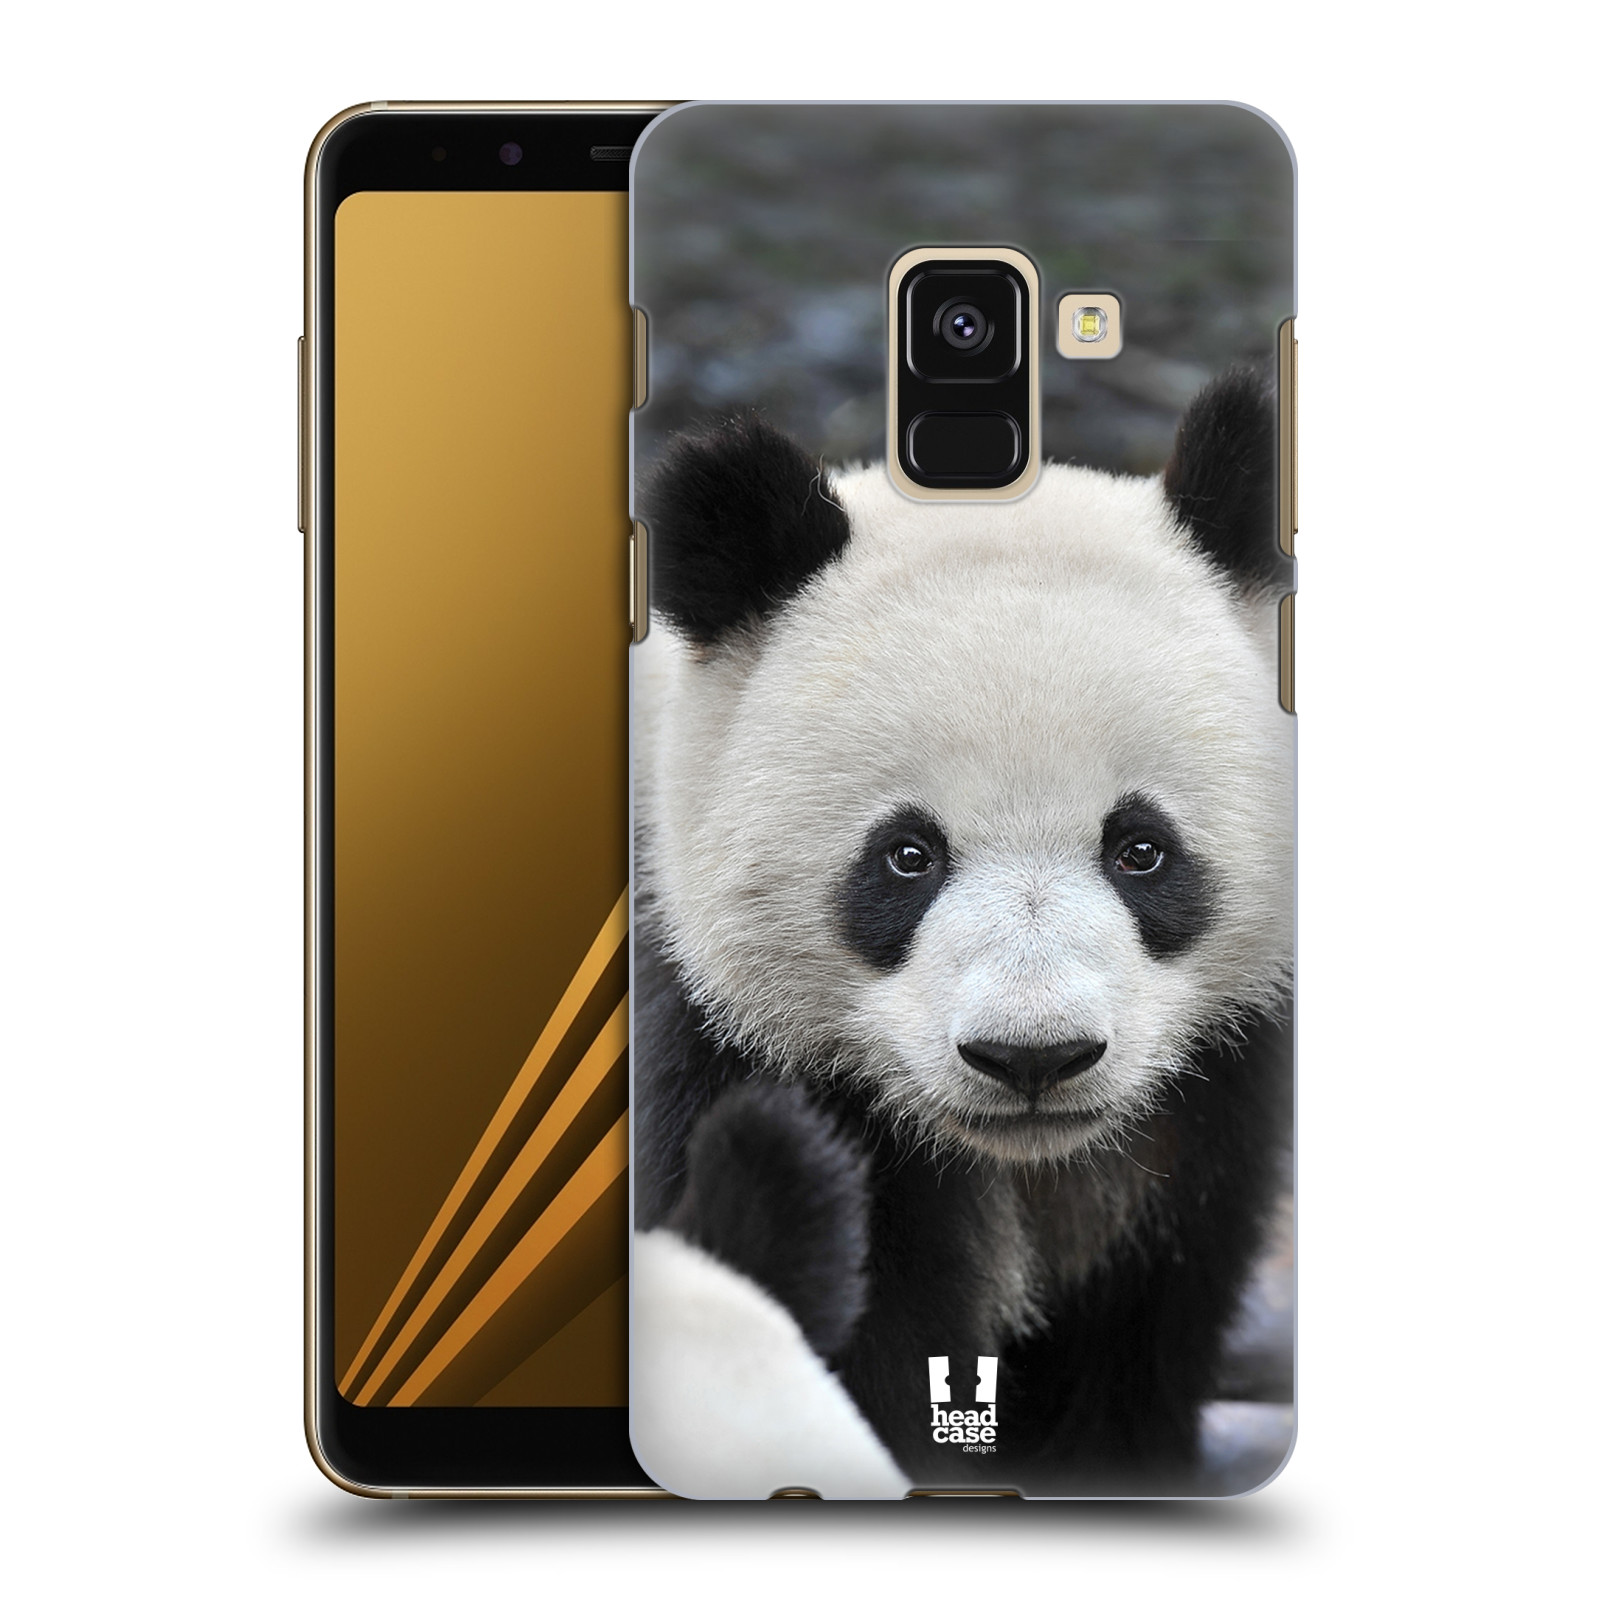 Zadní obal pro mobil Samsung Galaxy A8+ - HEAD CASE - Svět zvířat medvěd panda